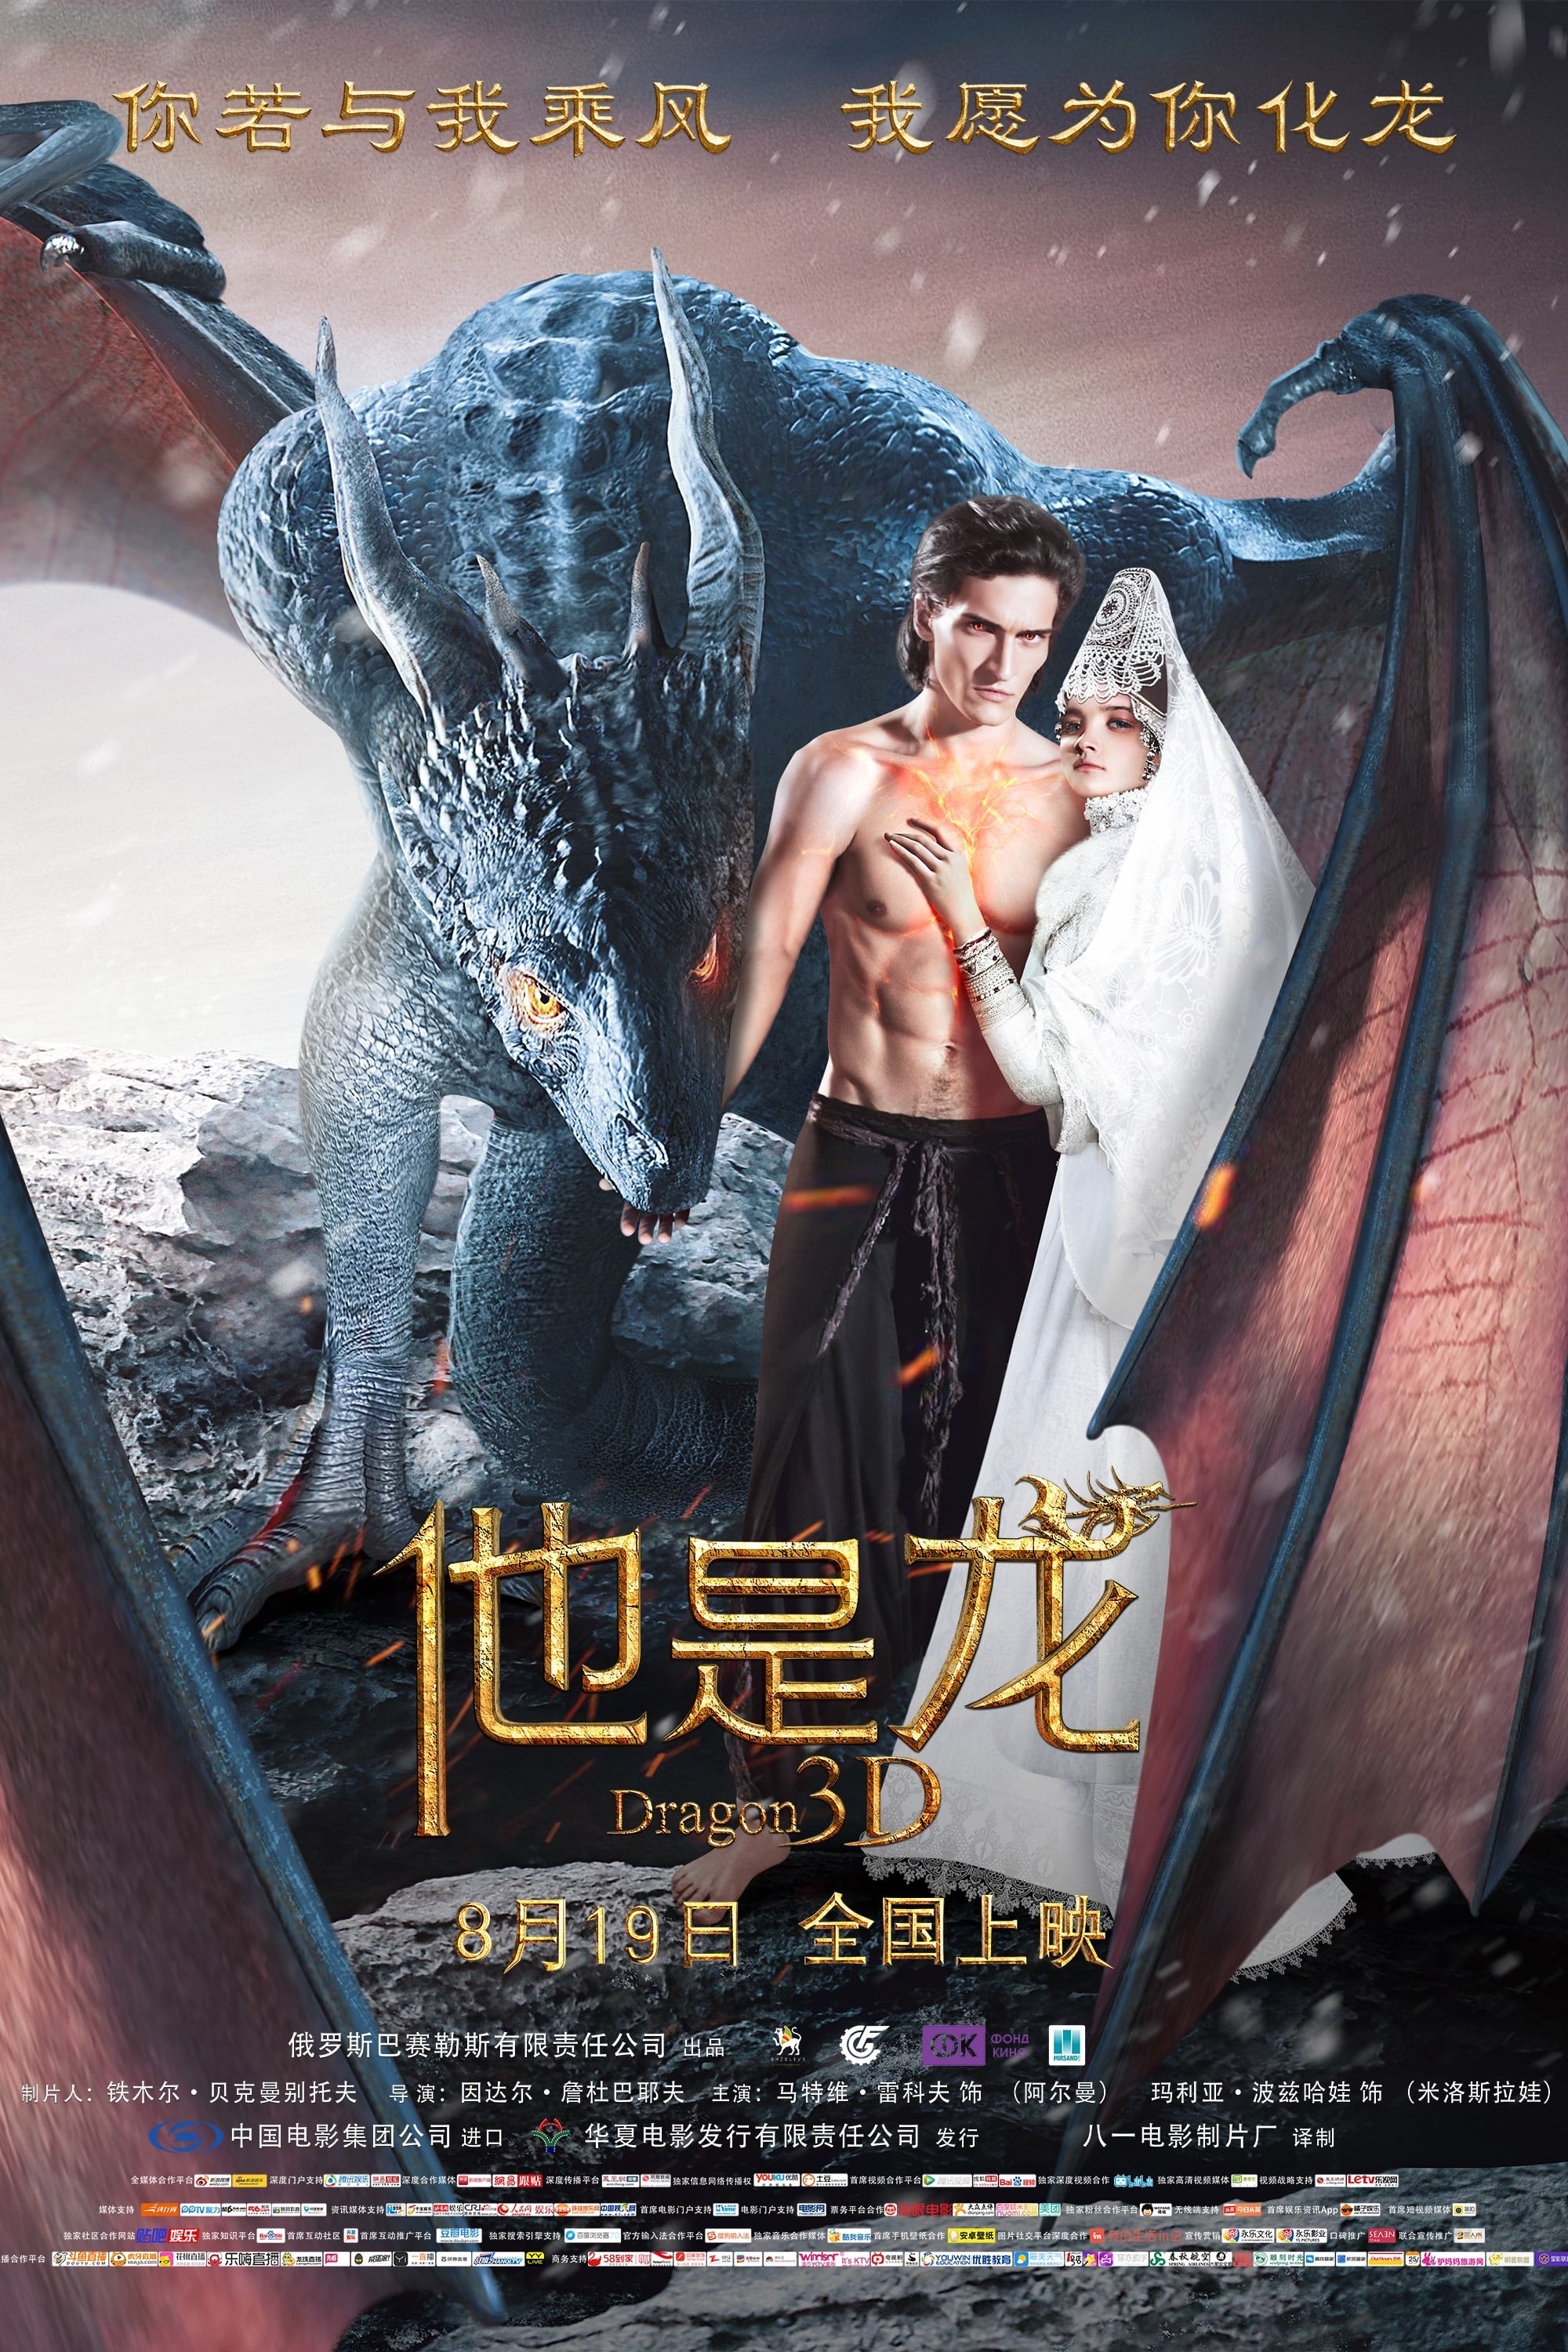 Xem Phim Truyền Thuyết Về Rồng - Dragon Inside Me / He’s a Dragon HD Vietsub mien phi - Poster Full HD